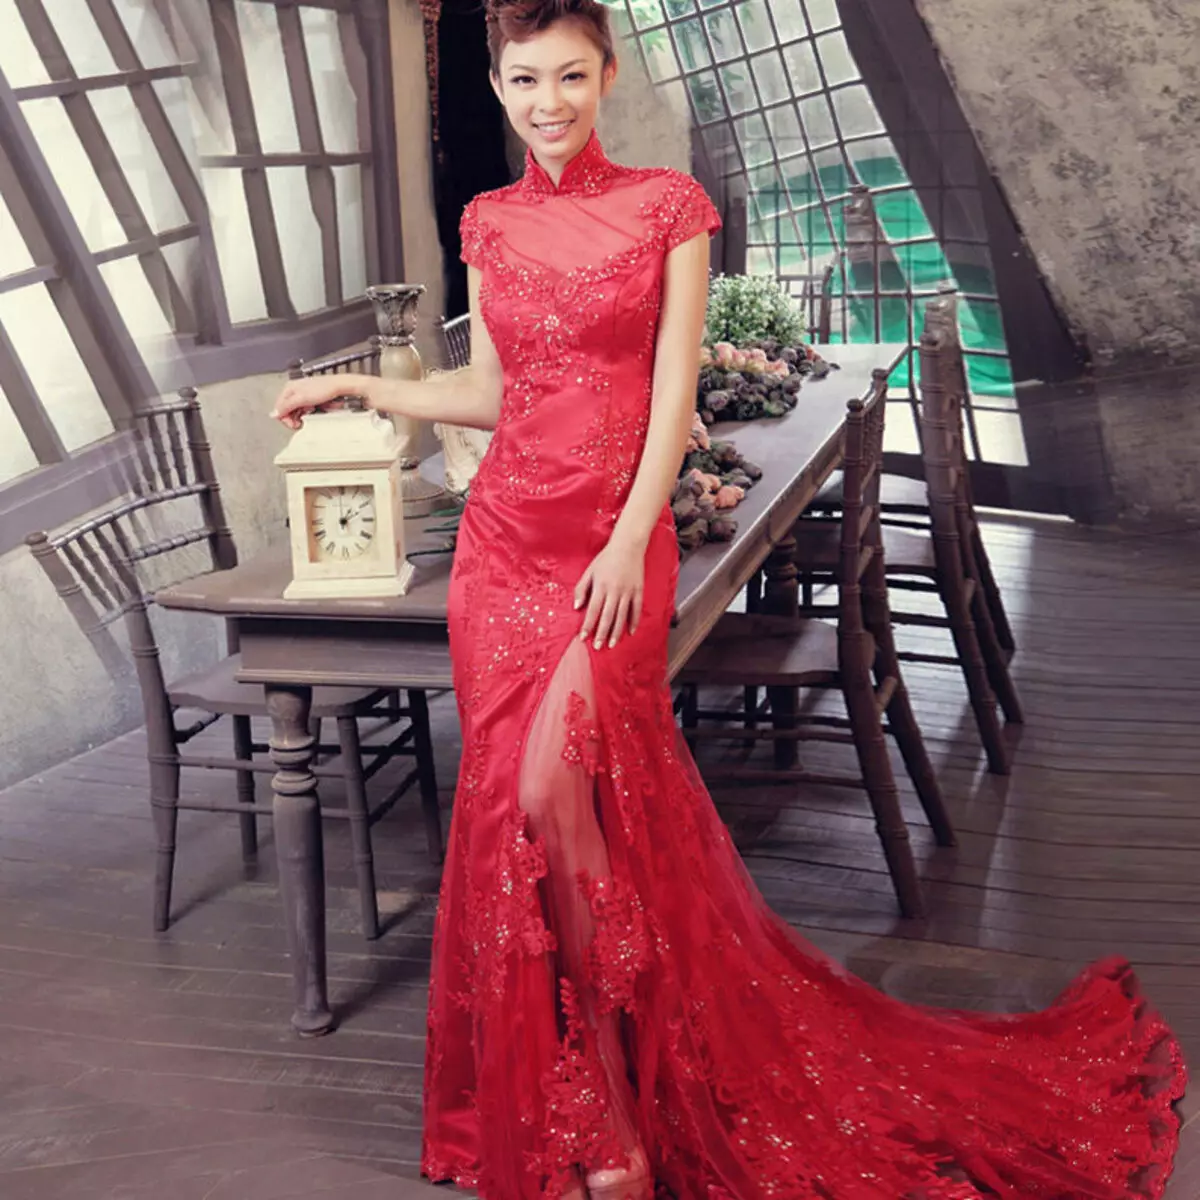 წითელი კაბა ერთად მაქმანი ჩინურ სტილში